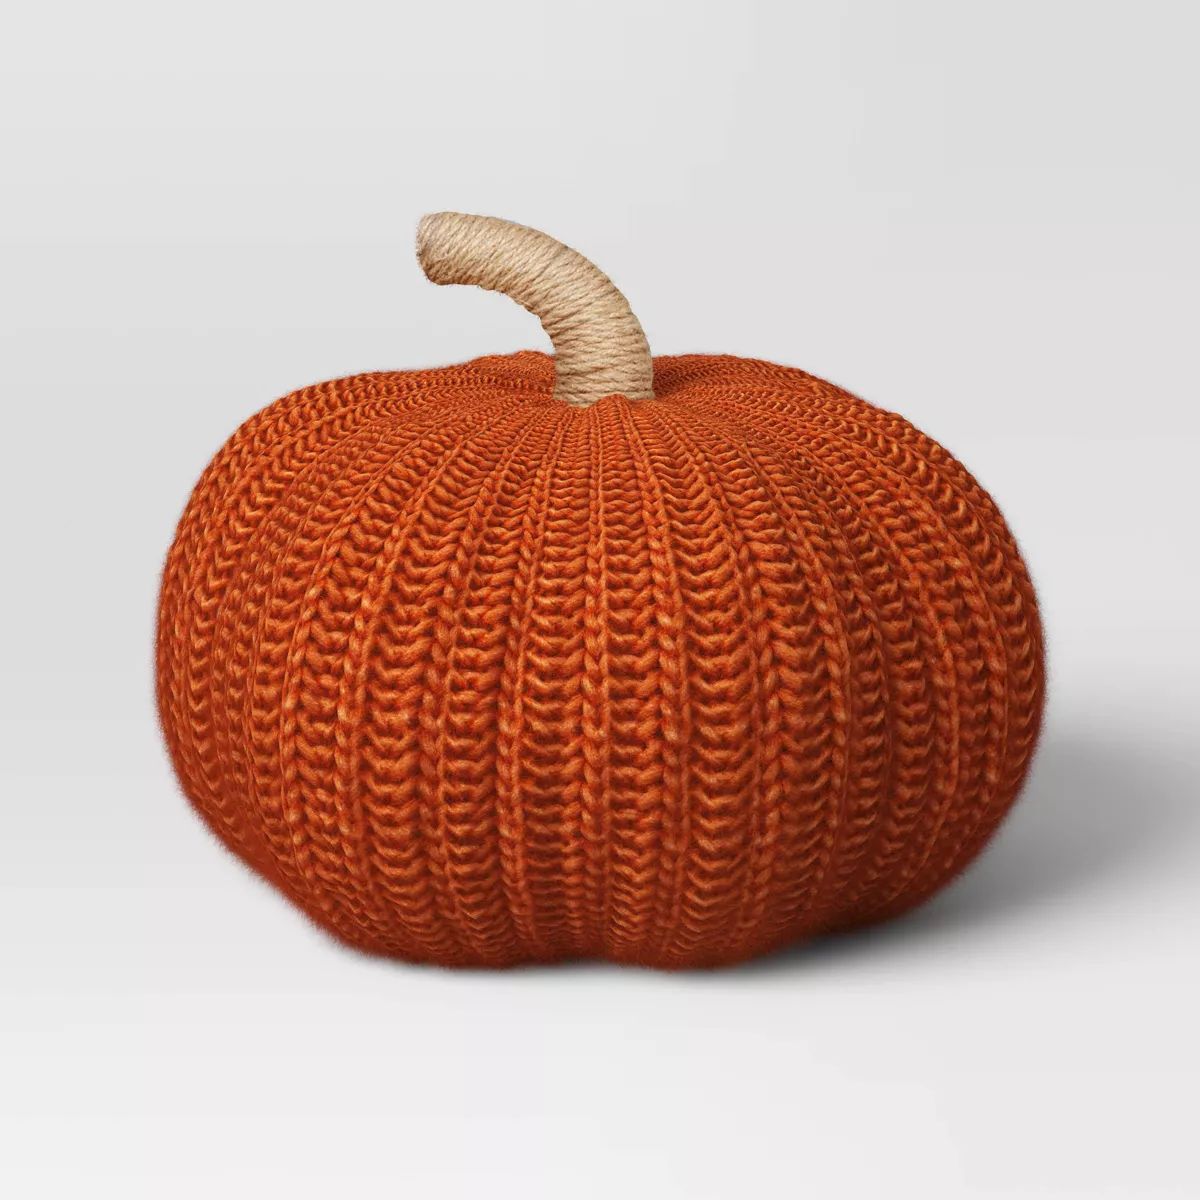 Knit Pumpkin with Jute Stem Novelty Throw Pillow - Threshold™ | Target